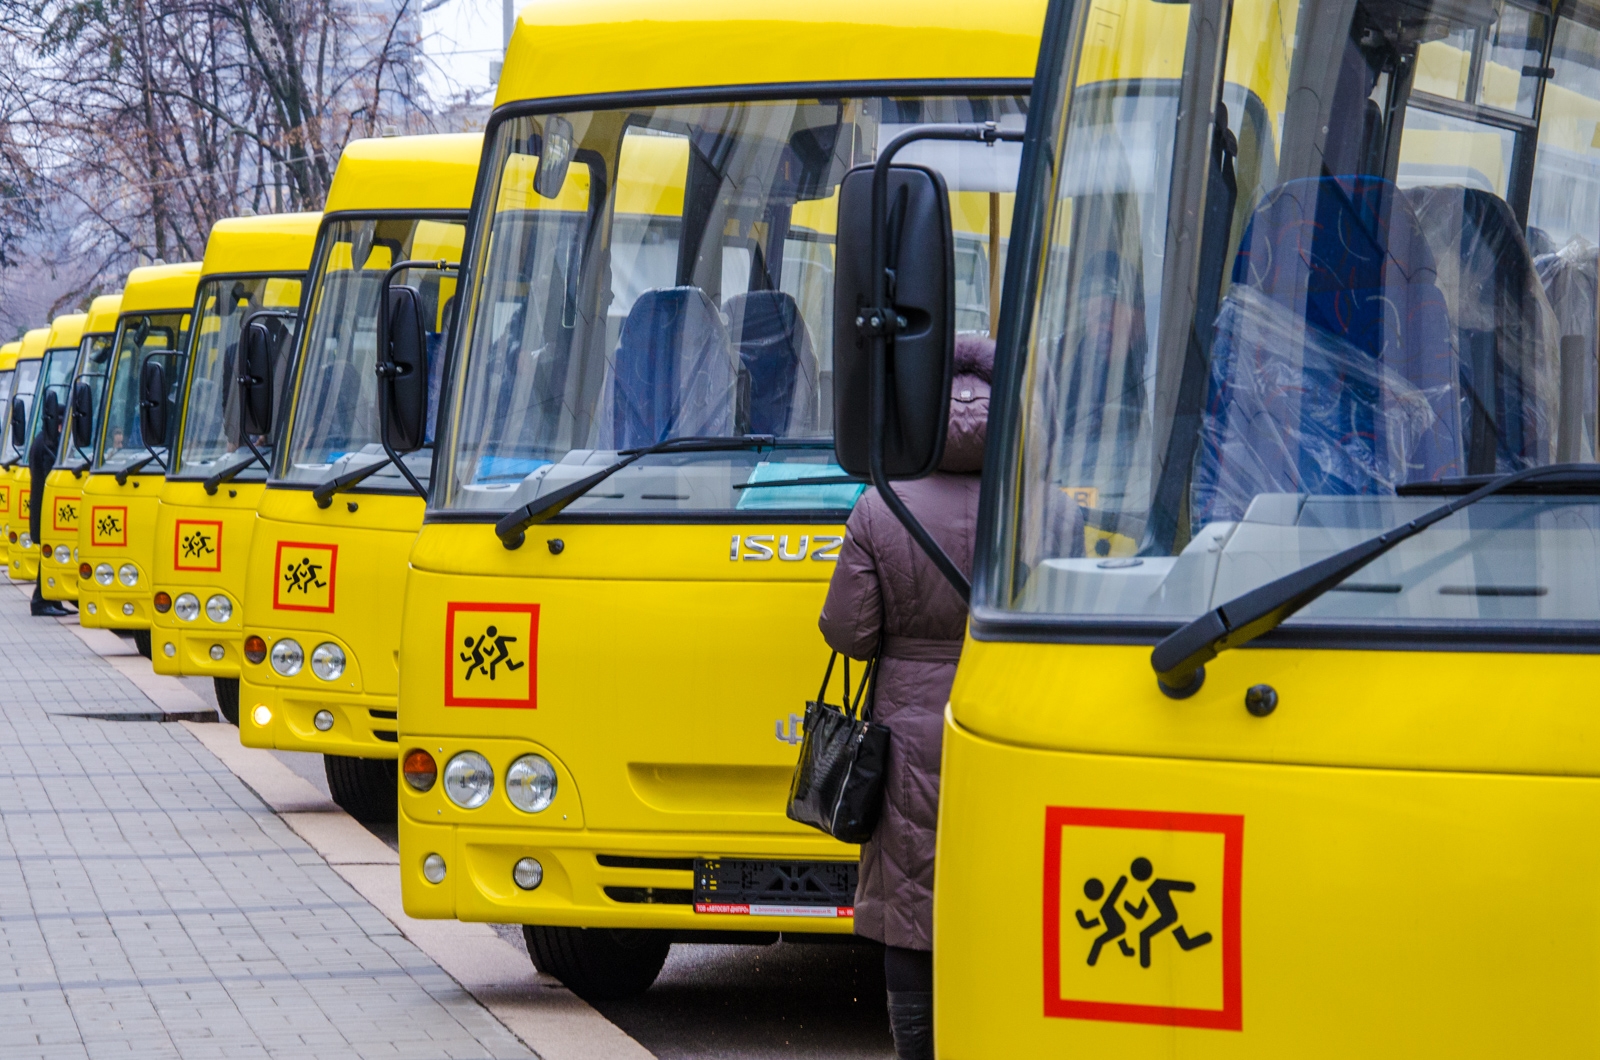 Специализированный автобус для перевозки детей. Школьный автобус. Автобус для детей. Автобус для перевозки детей. Школьный автобус дети.